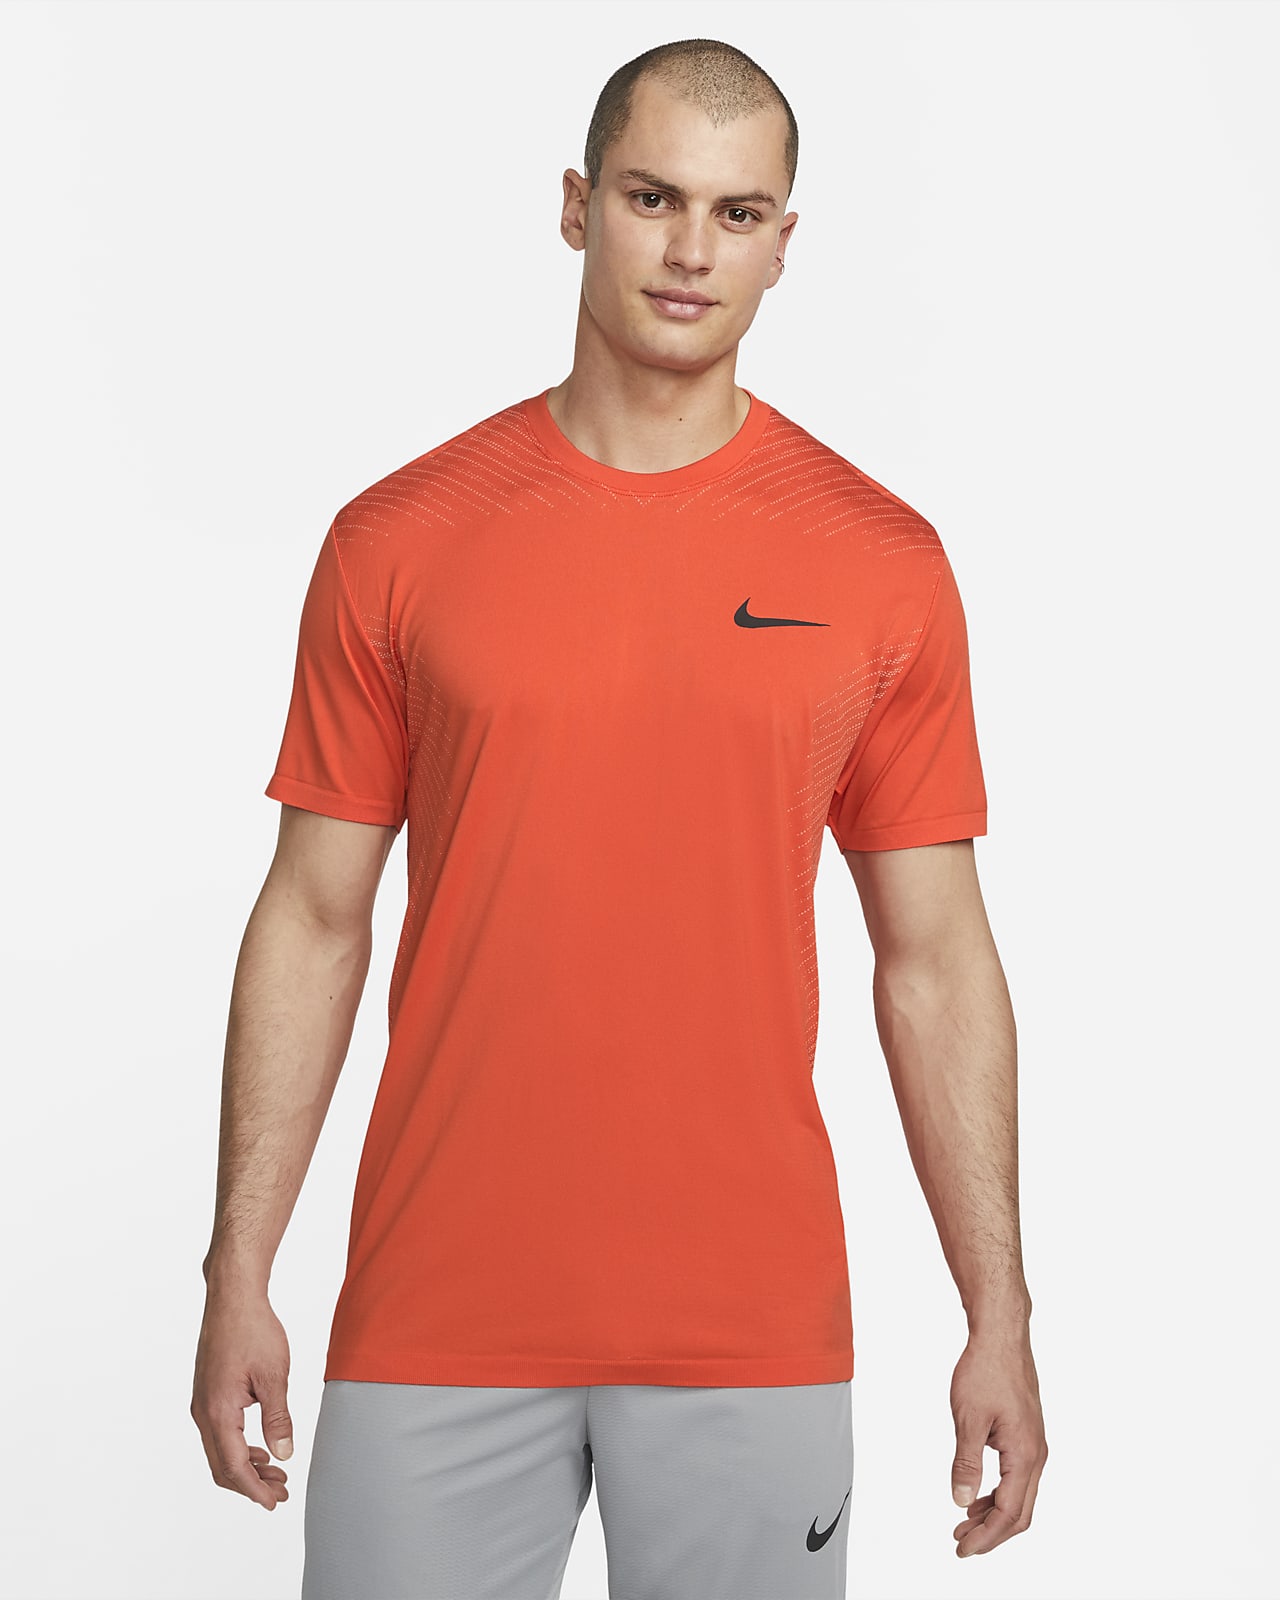 Ανδρική μπλούζα προπόνησης χωρίς ραφές Nike Dri-FIT